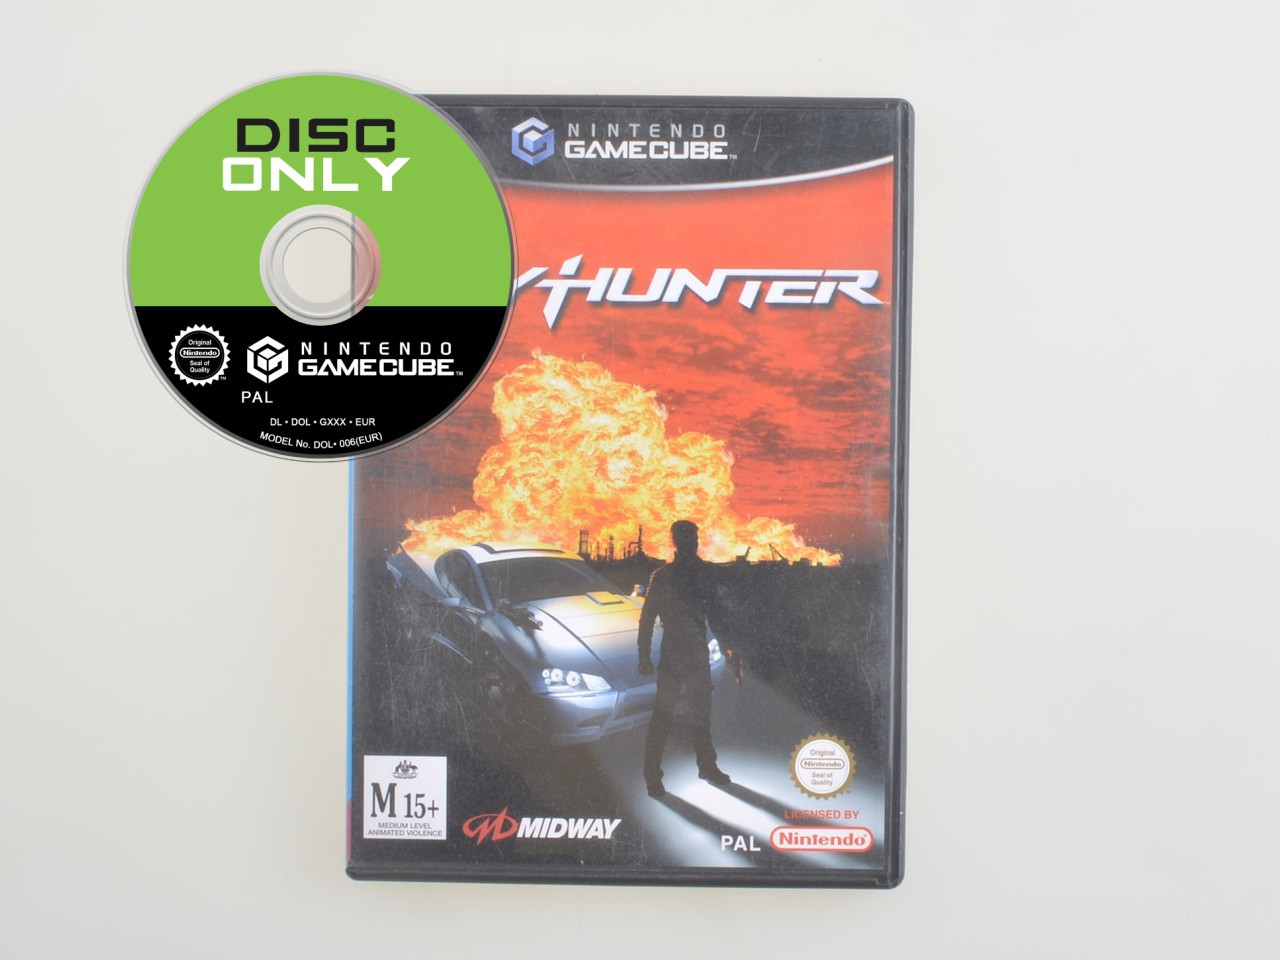 Spy Hunter - Disc Only Kopen | Gamecube Games